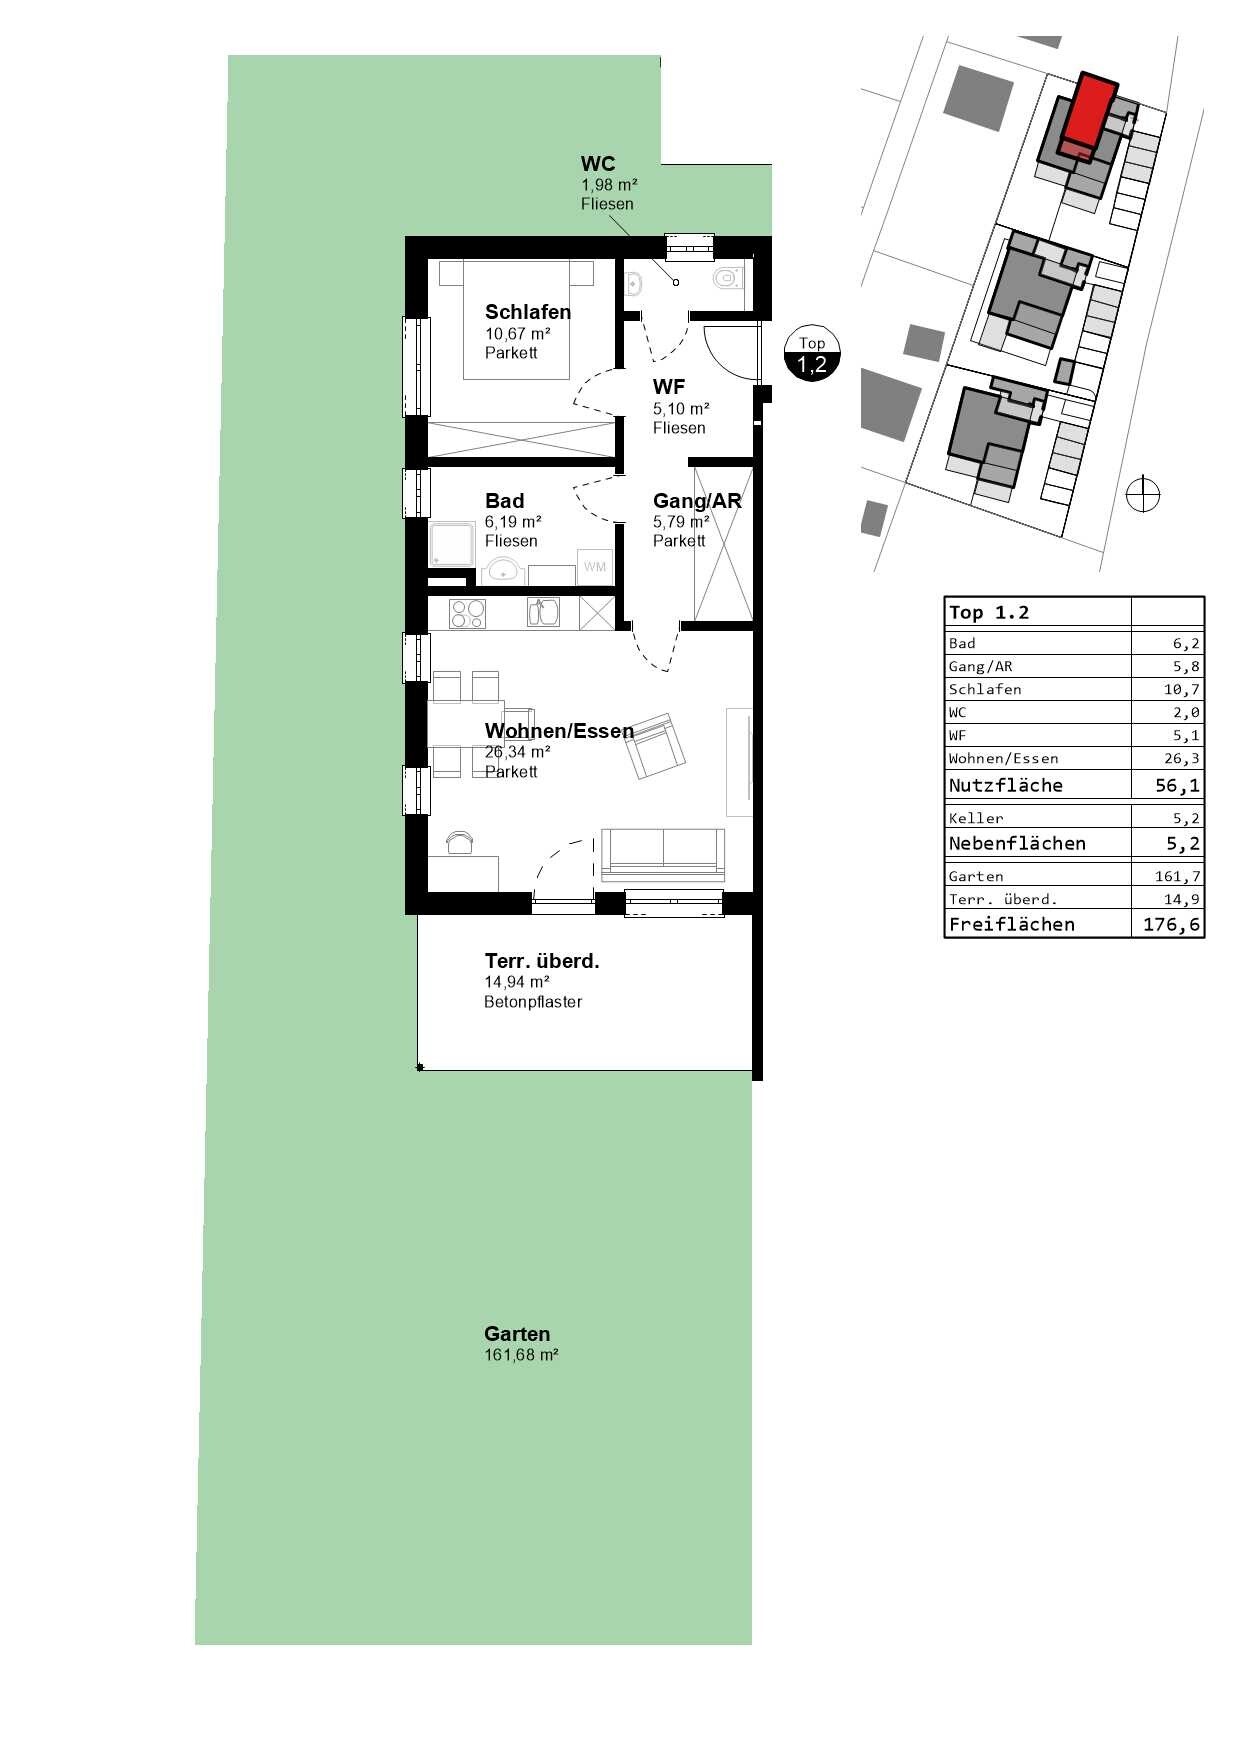 aGrundrissplan Haus 1, Top 2 mit Garten 56,1 m²_ 118_PRA-2 (002)